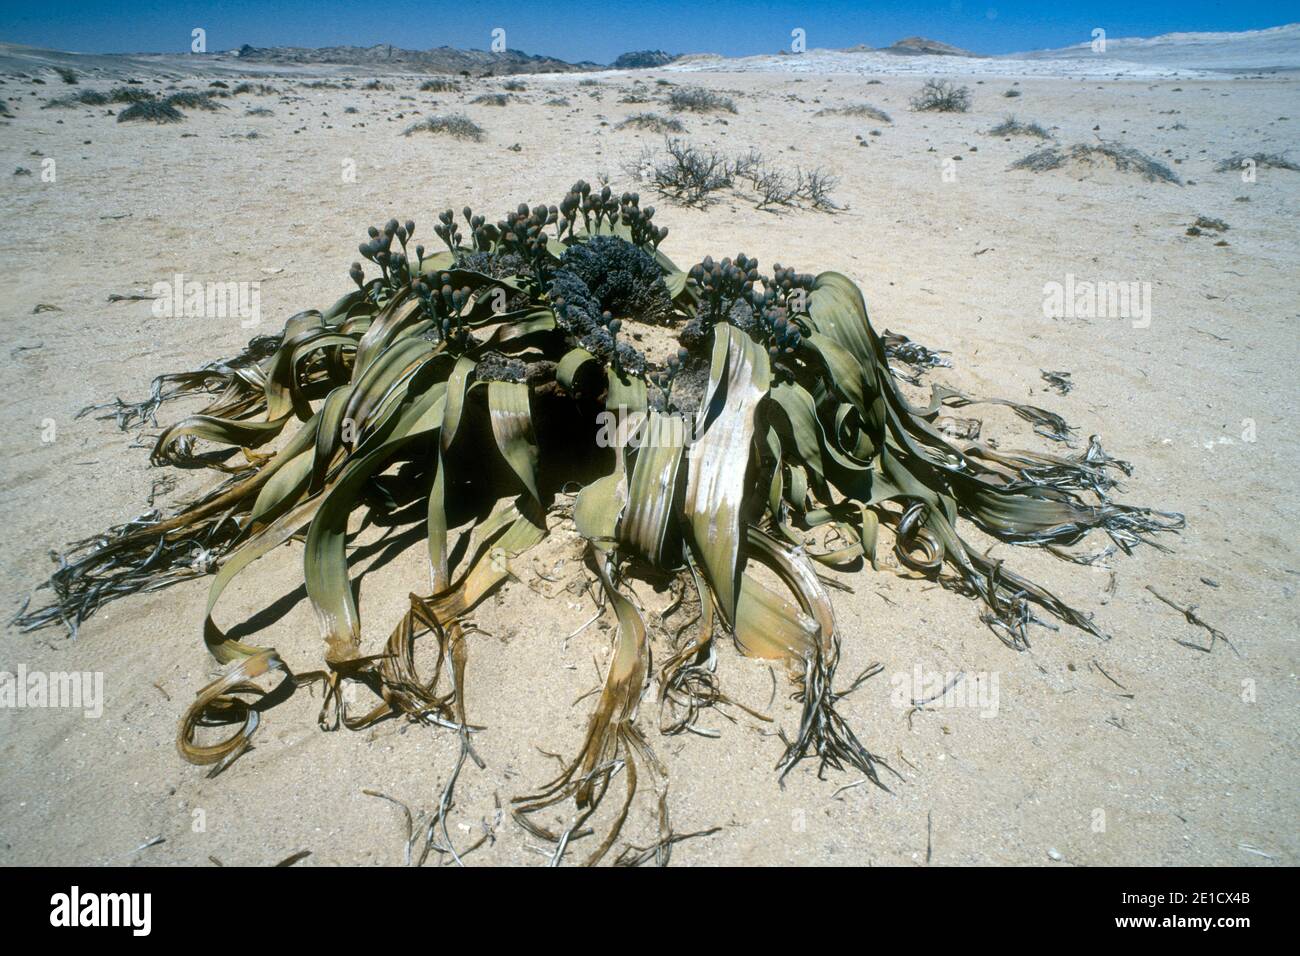 El nombre latino de Tumboa Welwitschia mirabilis es uno de los más antiguos Plantas vivas conocidas encontradas en el desierto namibiano Foto de stock